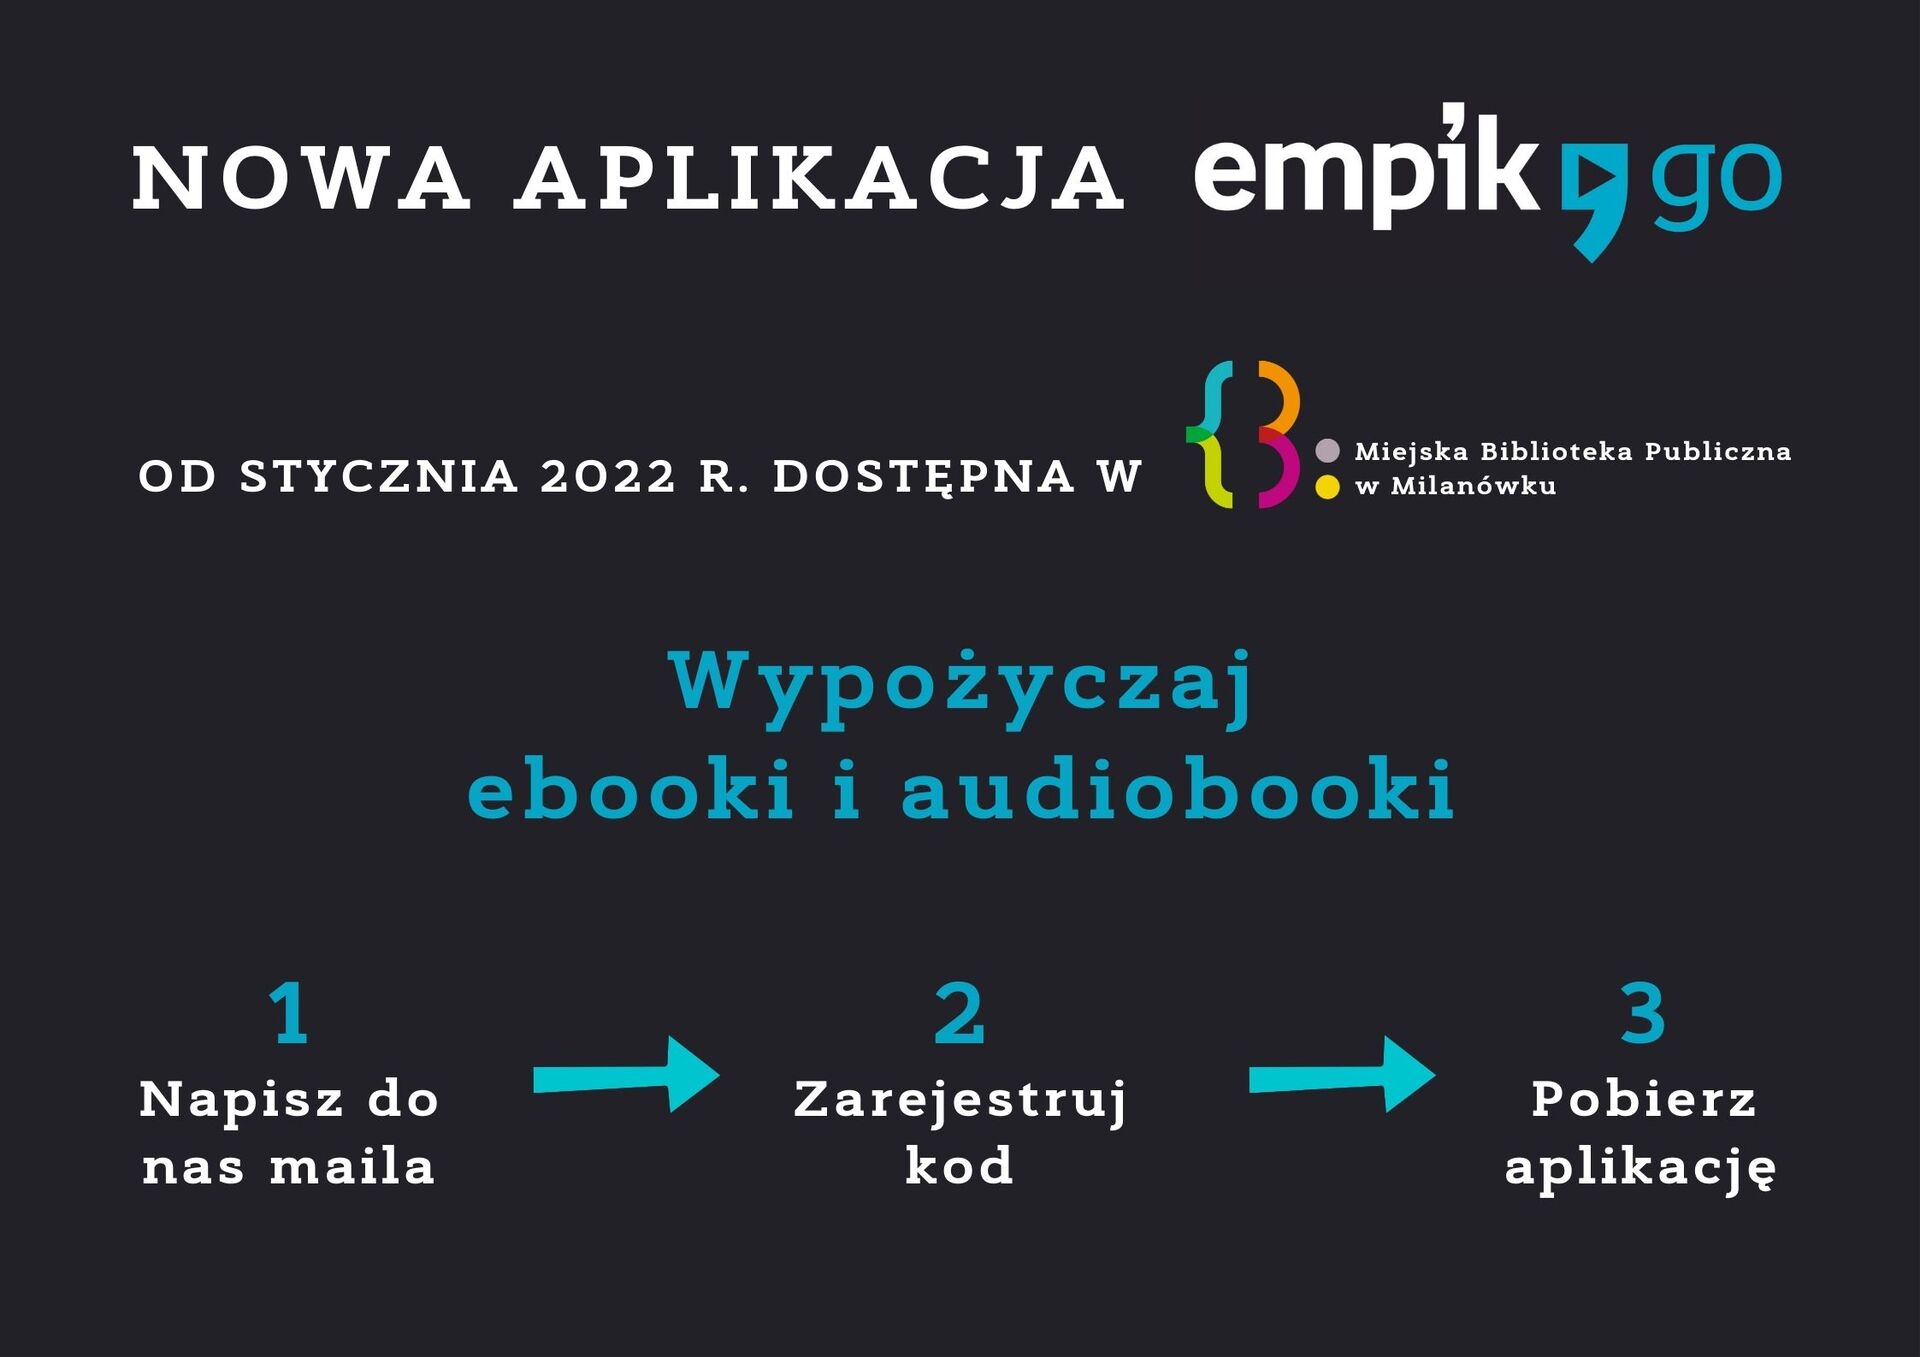 Nowa aplikacja - EmpikGo - dostęp od 3 stycznia 2022